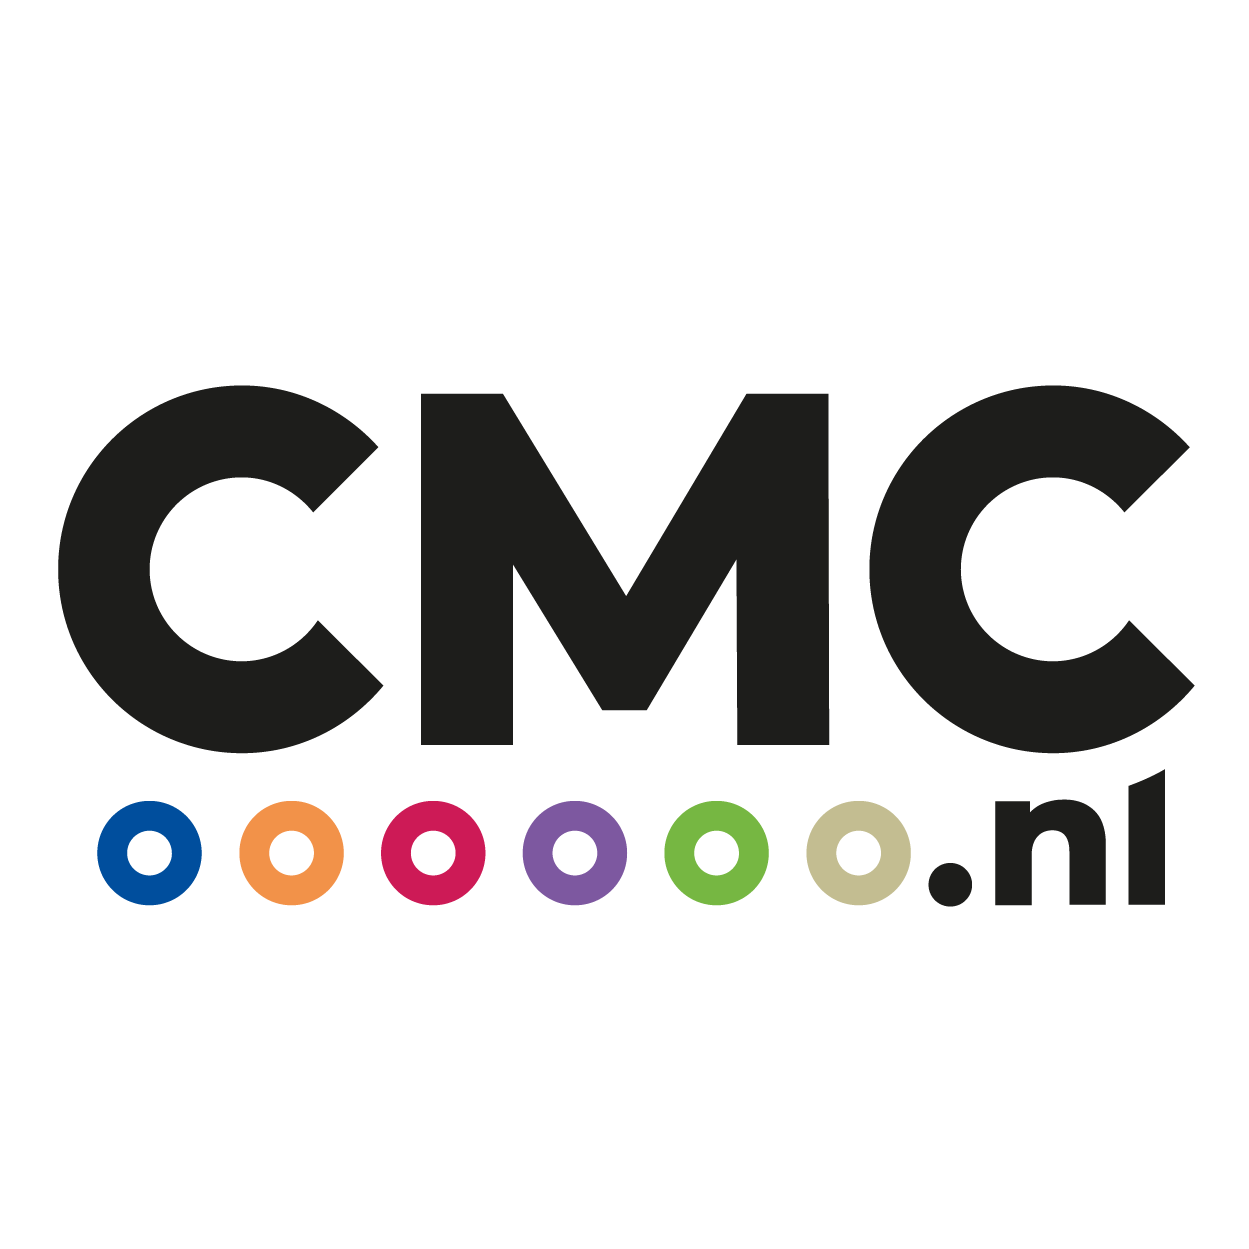 CMC Bedrijfsmakelaars